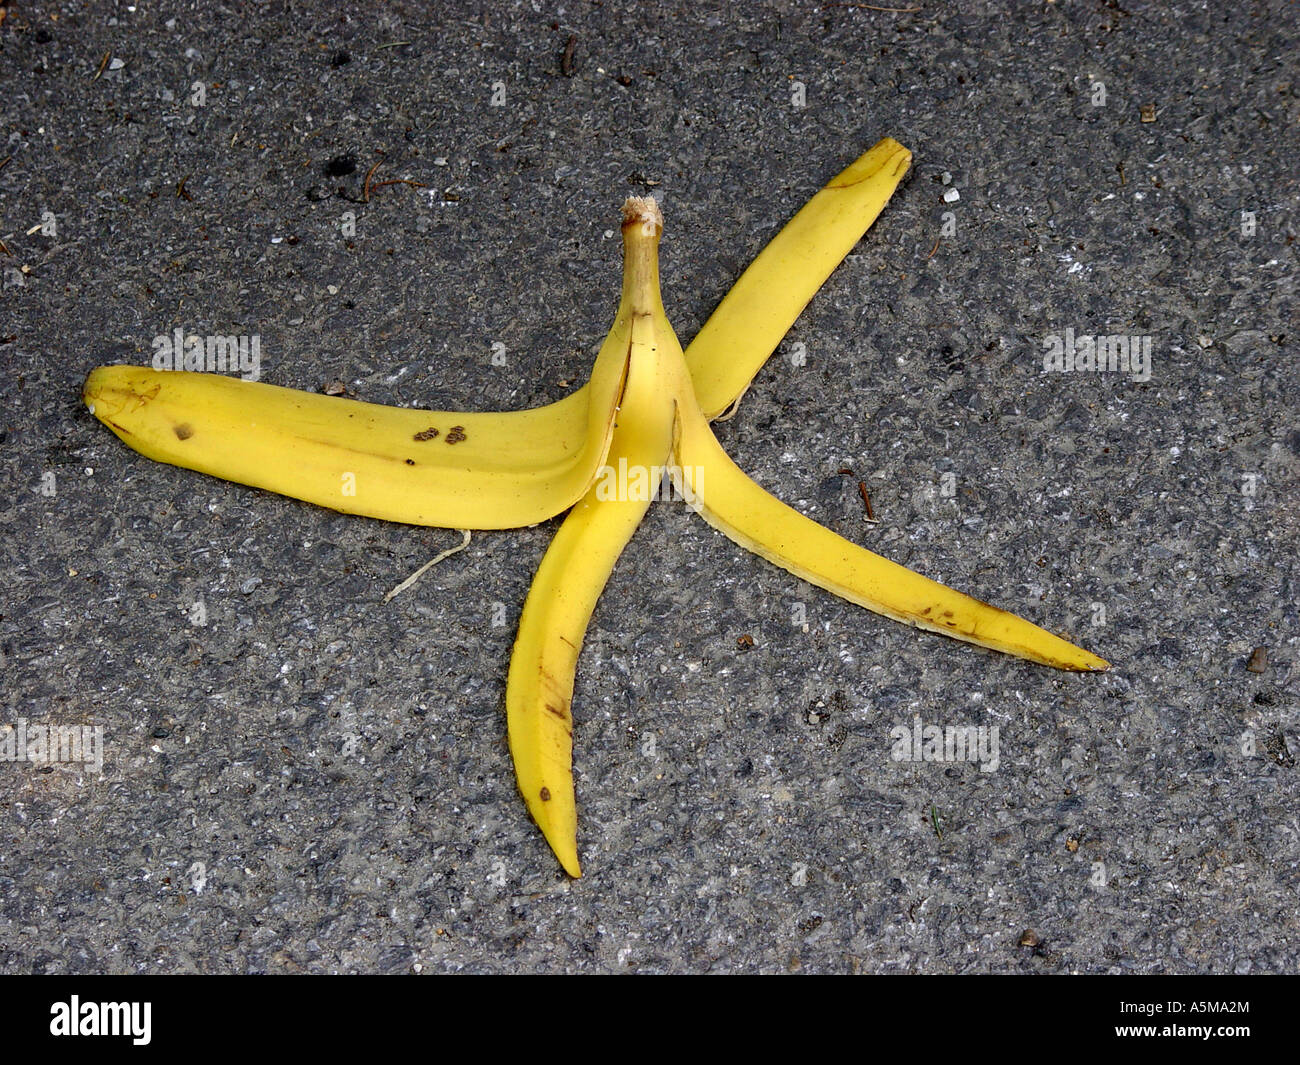 Bananenschale auf der Straße als Symbol für Ausrutschen Hinfallen usw Banana skin on the road as symbol for slipping falling dow Stock Photo